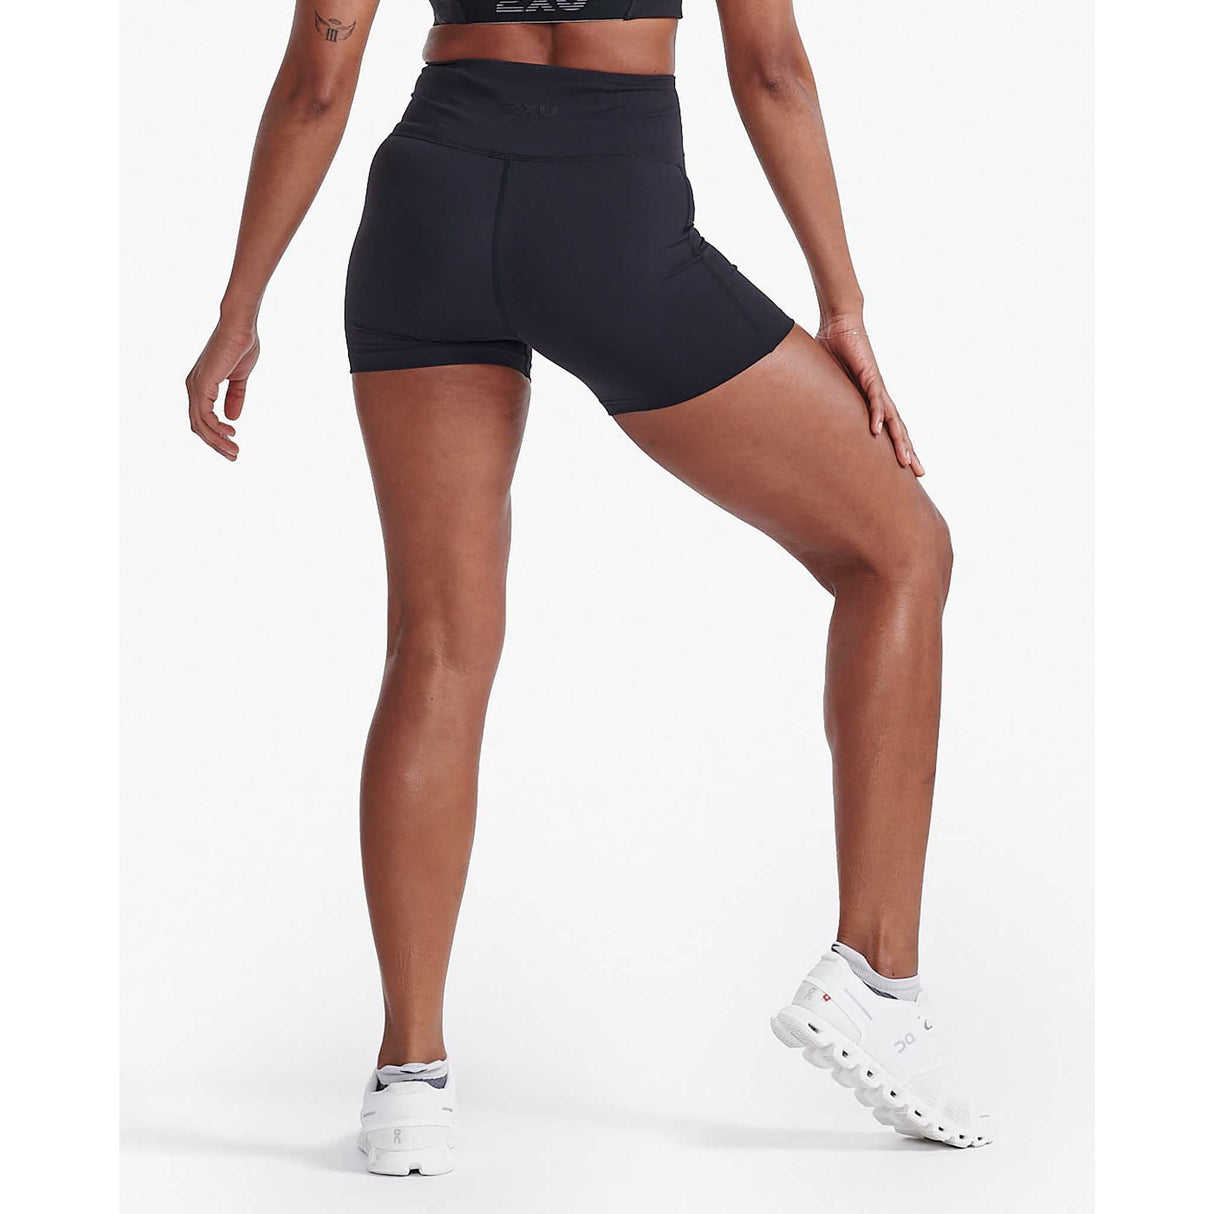 2XU Form Hi-Rise shorts femme - noir / noir dos